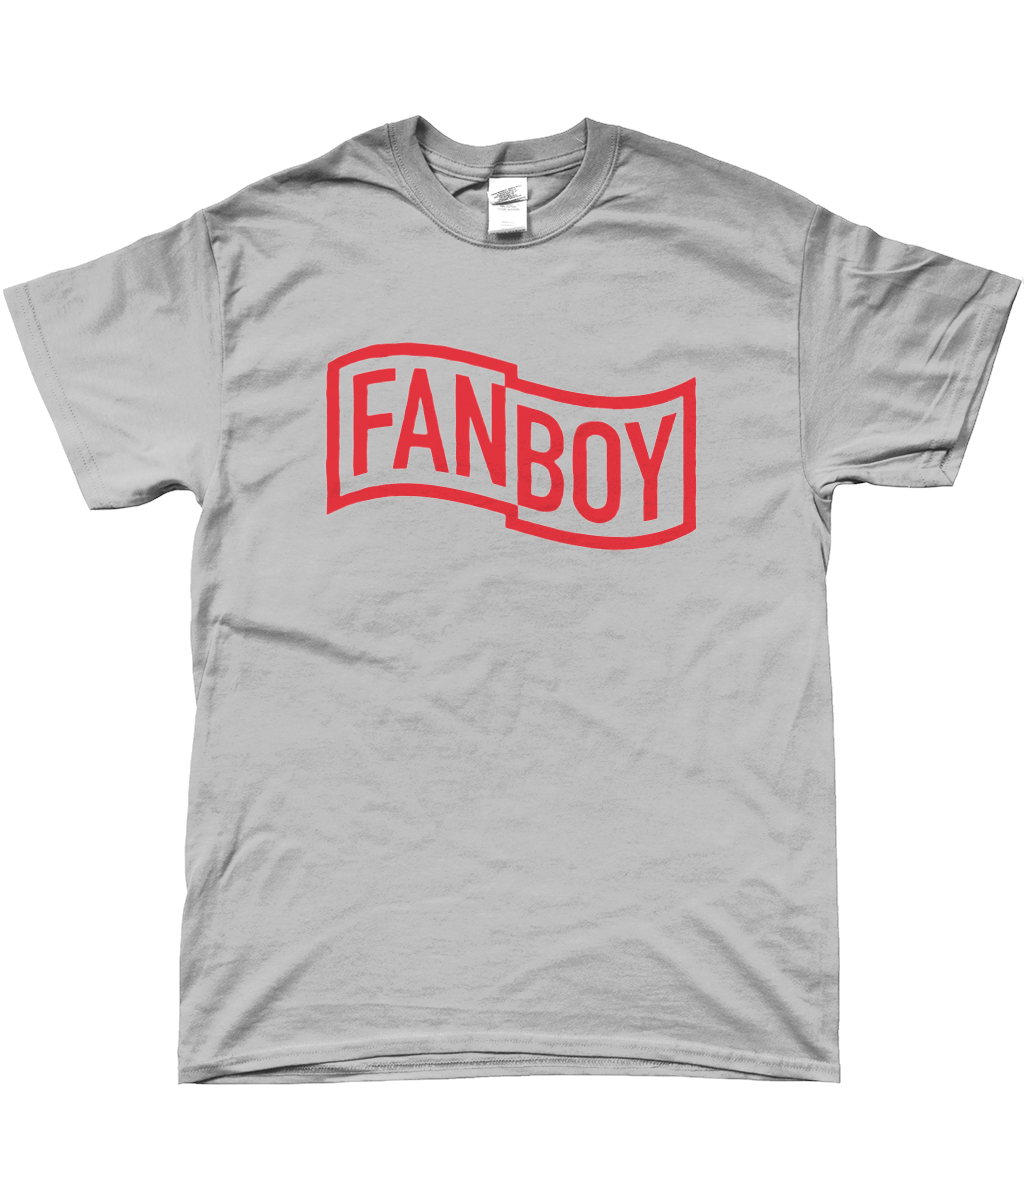 Fanboy Red Logo T-Shirt